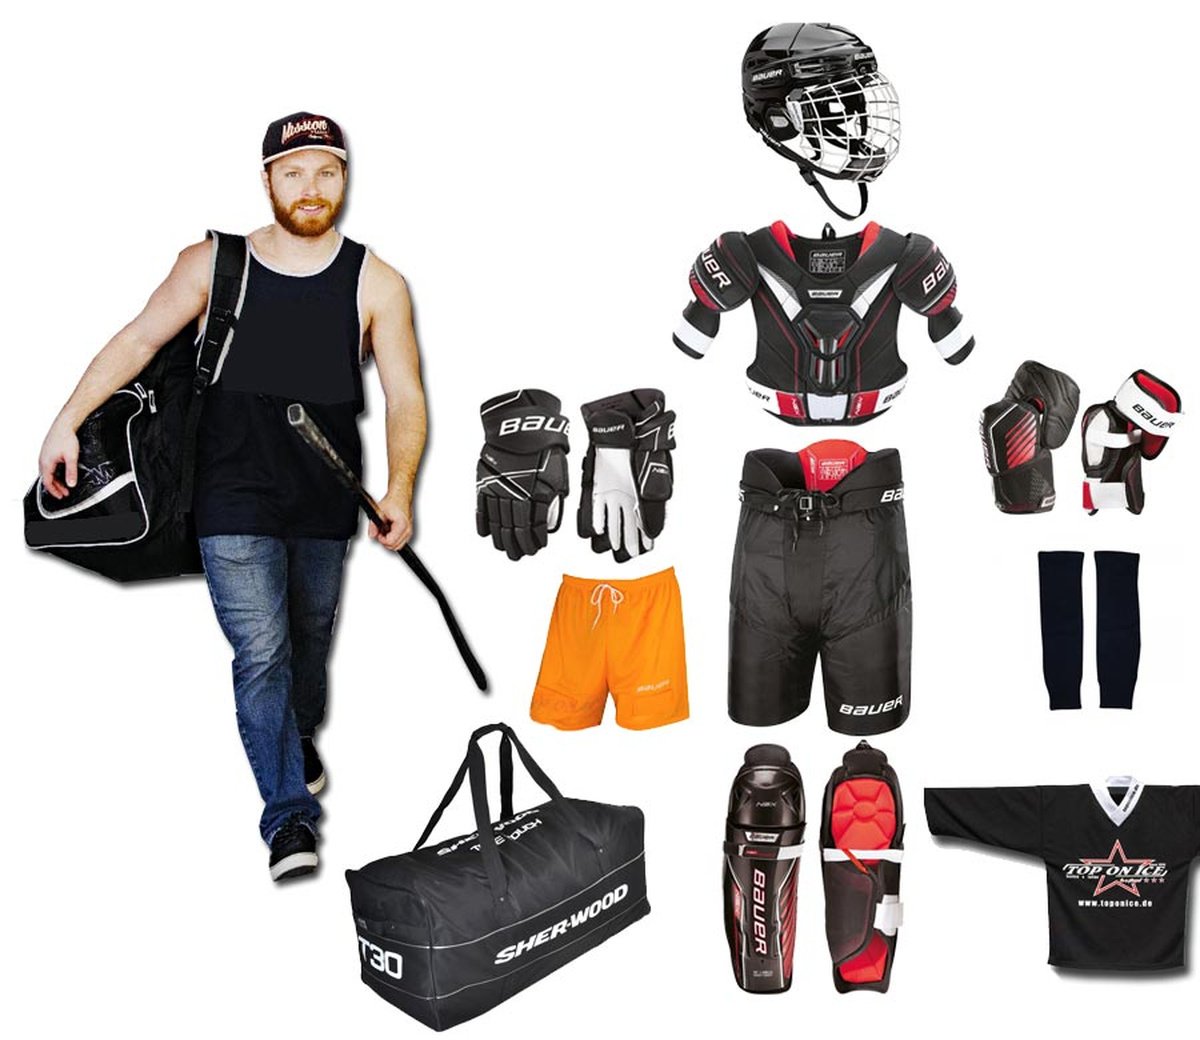 Bauer защитный набор для хоккея